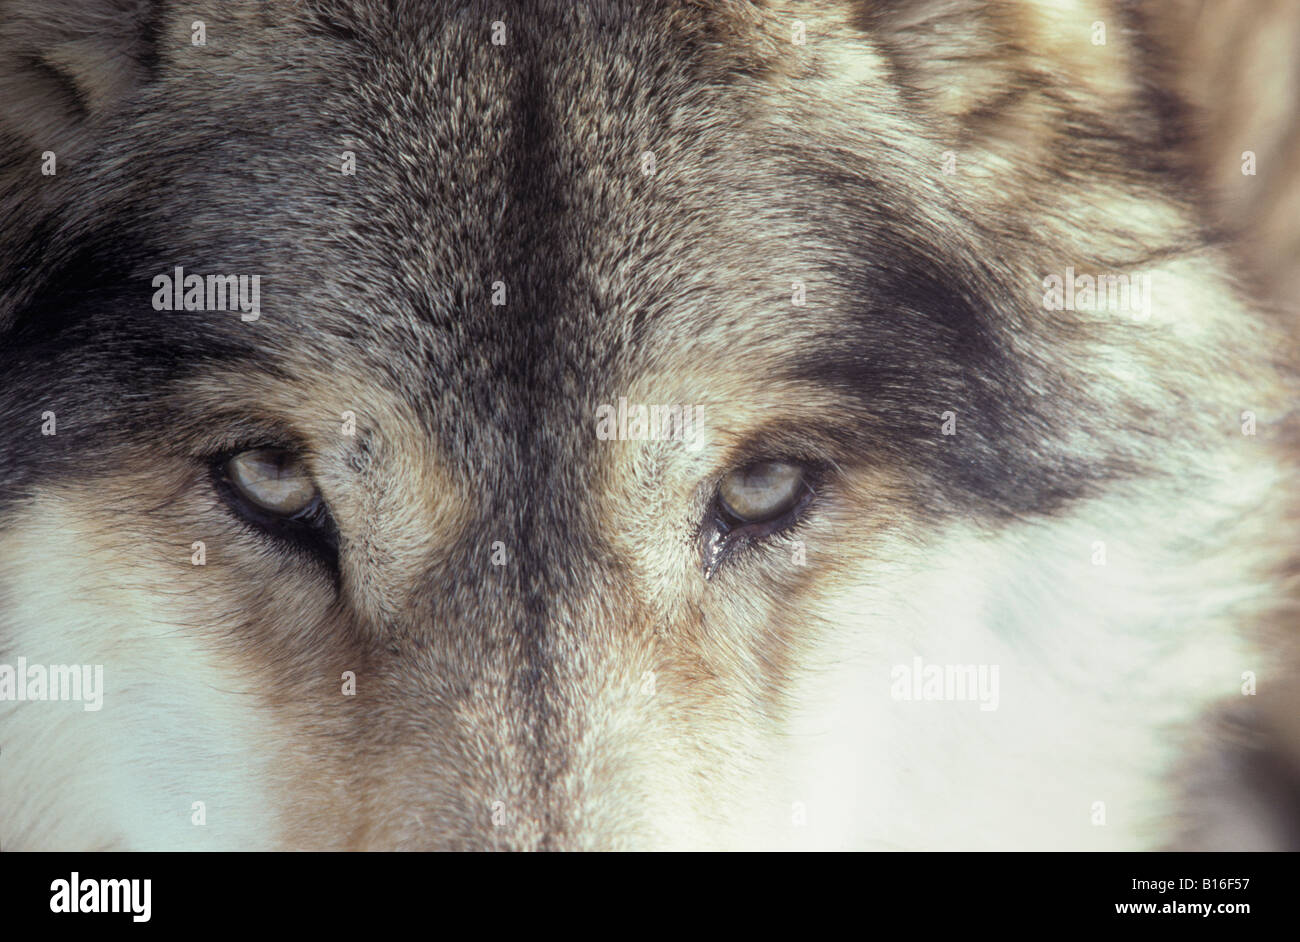 GRAUER WOLF CANIS LUPUS auch bekannt als TIMBER WOLF PORTRAIT Tier Canidae Caniden Canis Canis Lupus Carnivora Fleischfresser Auto Stockfoto